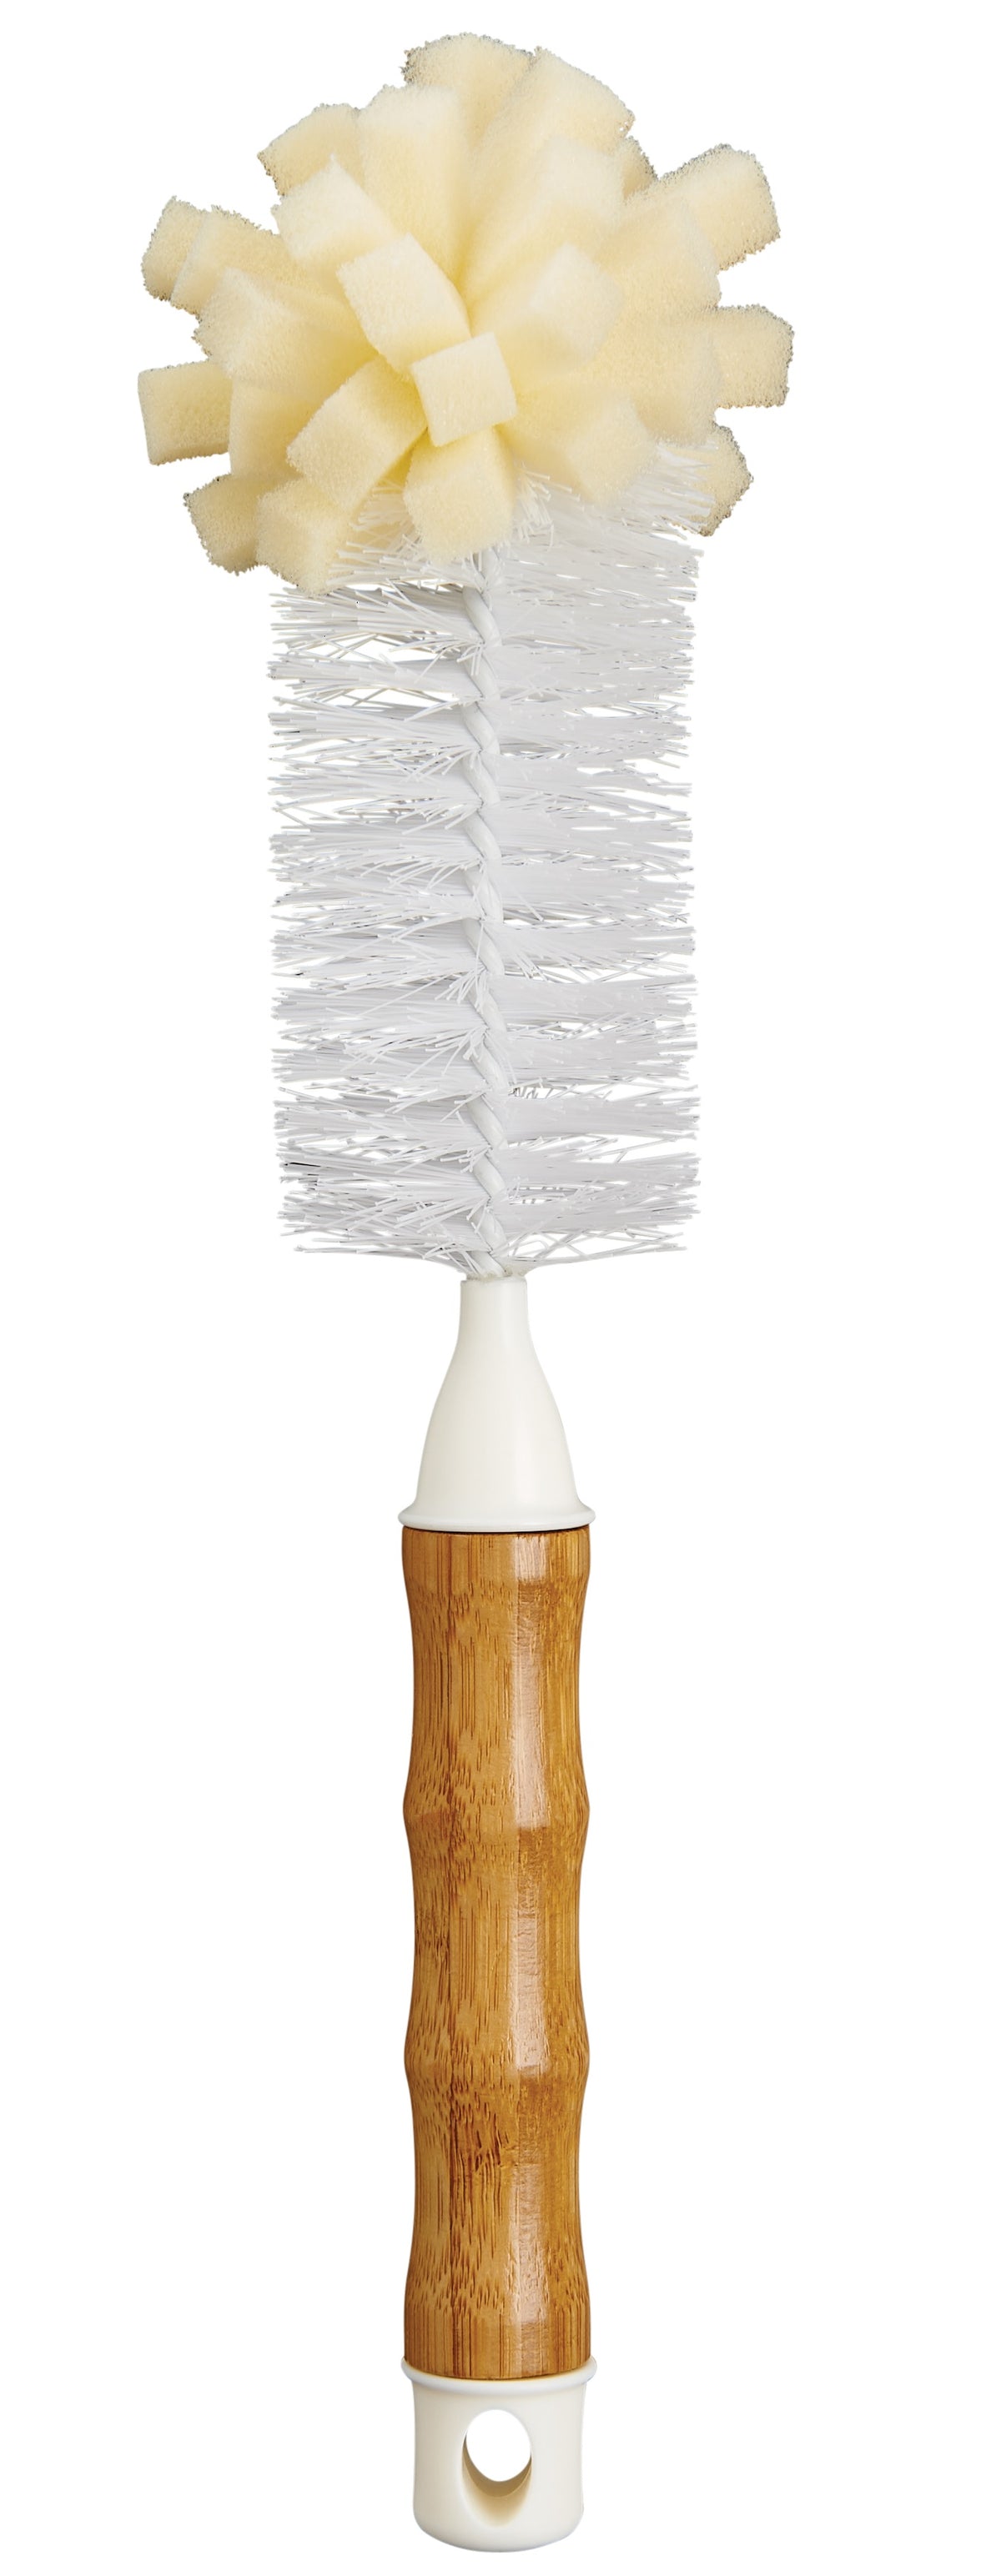 Harold Imports 42001 Bamboo Bottle Brush, 12" x 3"